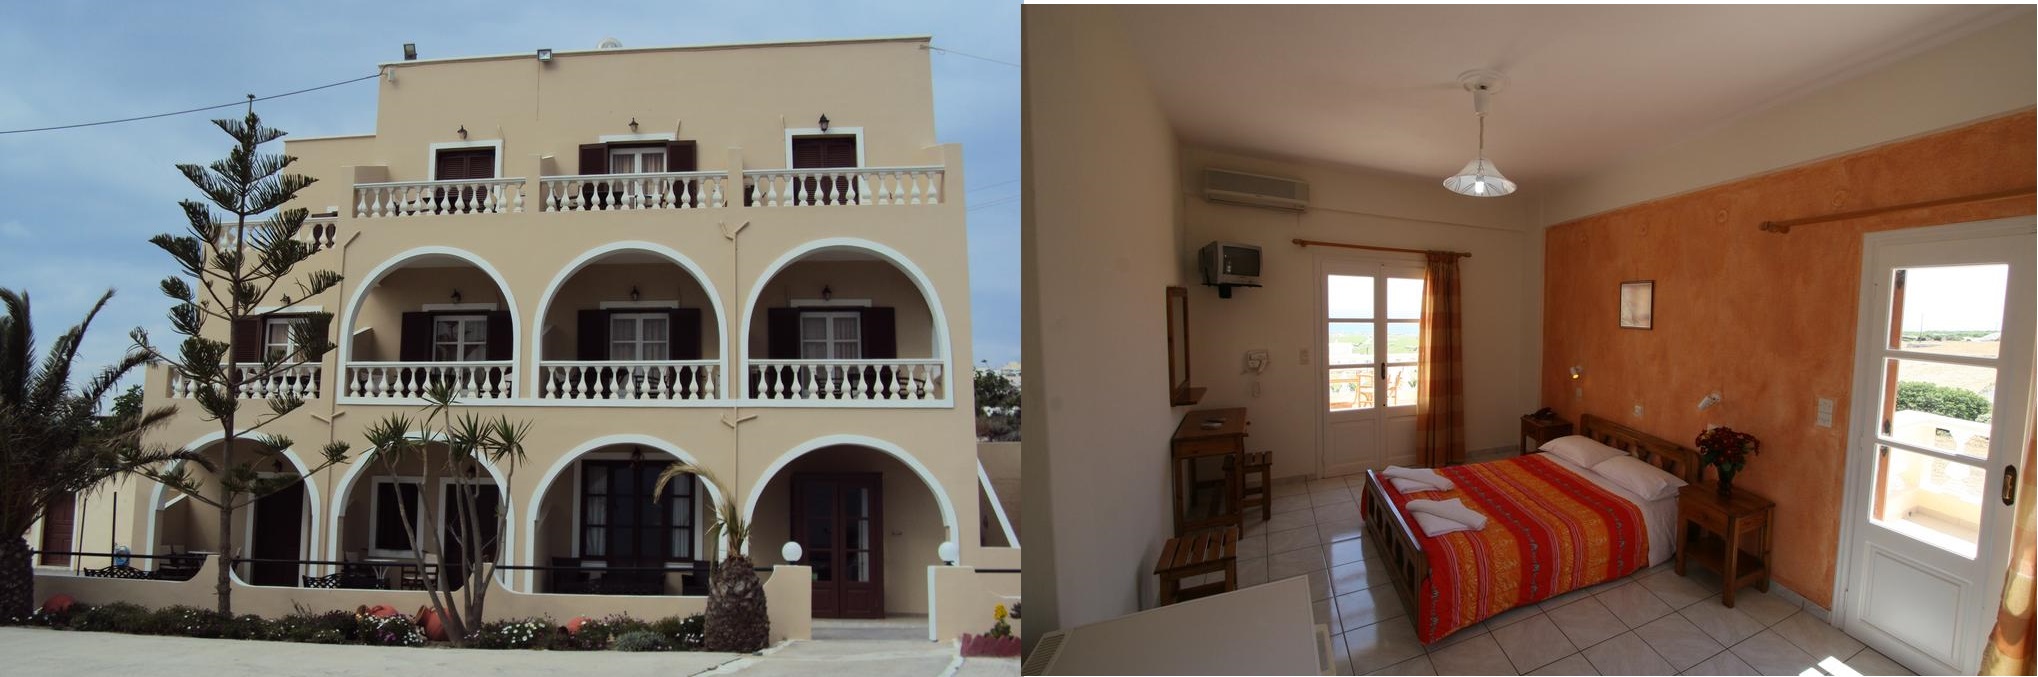 Tak wygląda przykładowy pokój dla 2 osób w hotelu Romantic Resort na Santorini, położonym w Fira. Na pierwszym od lewej zdjęciu widzimy front budynku. 